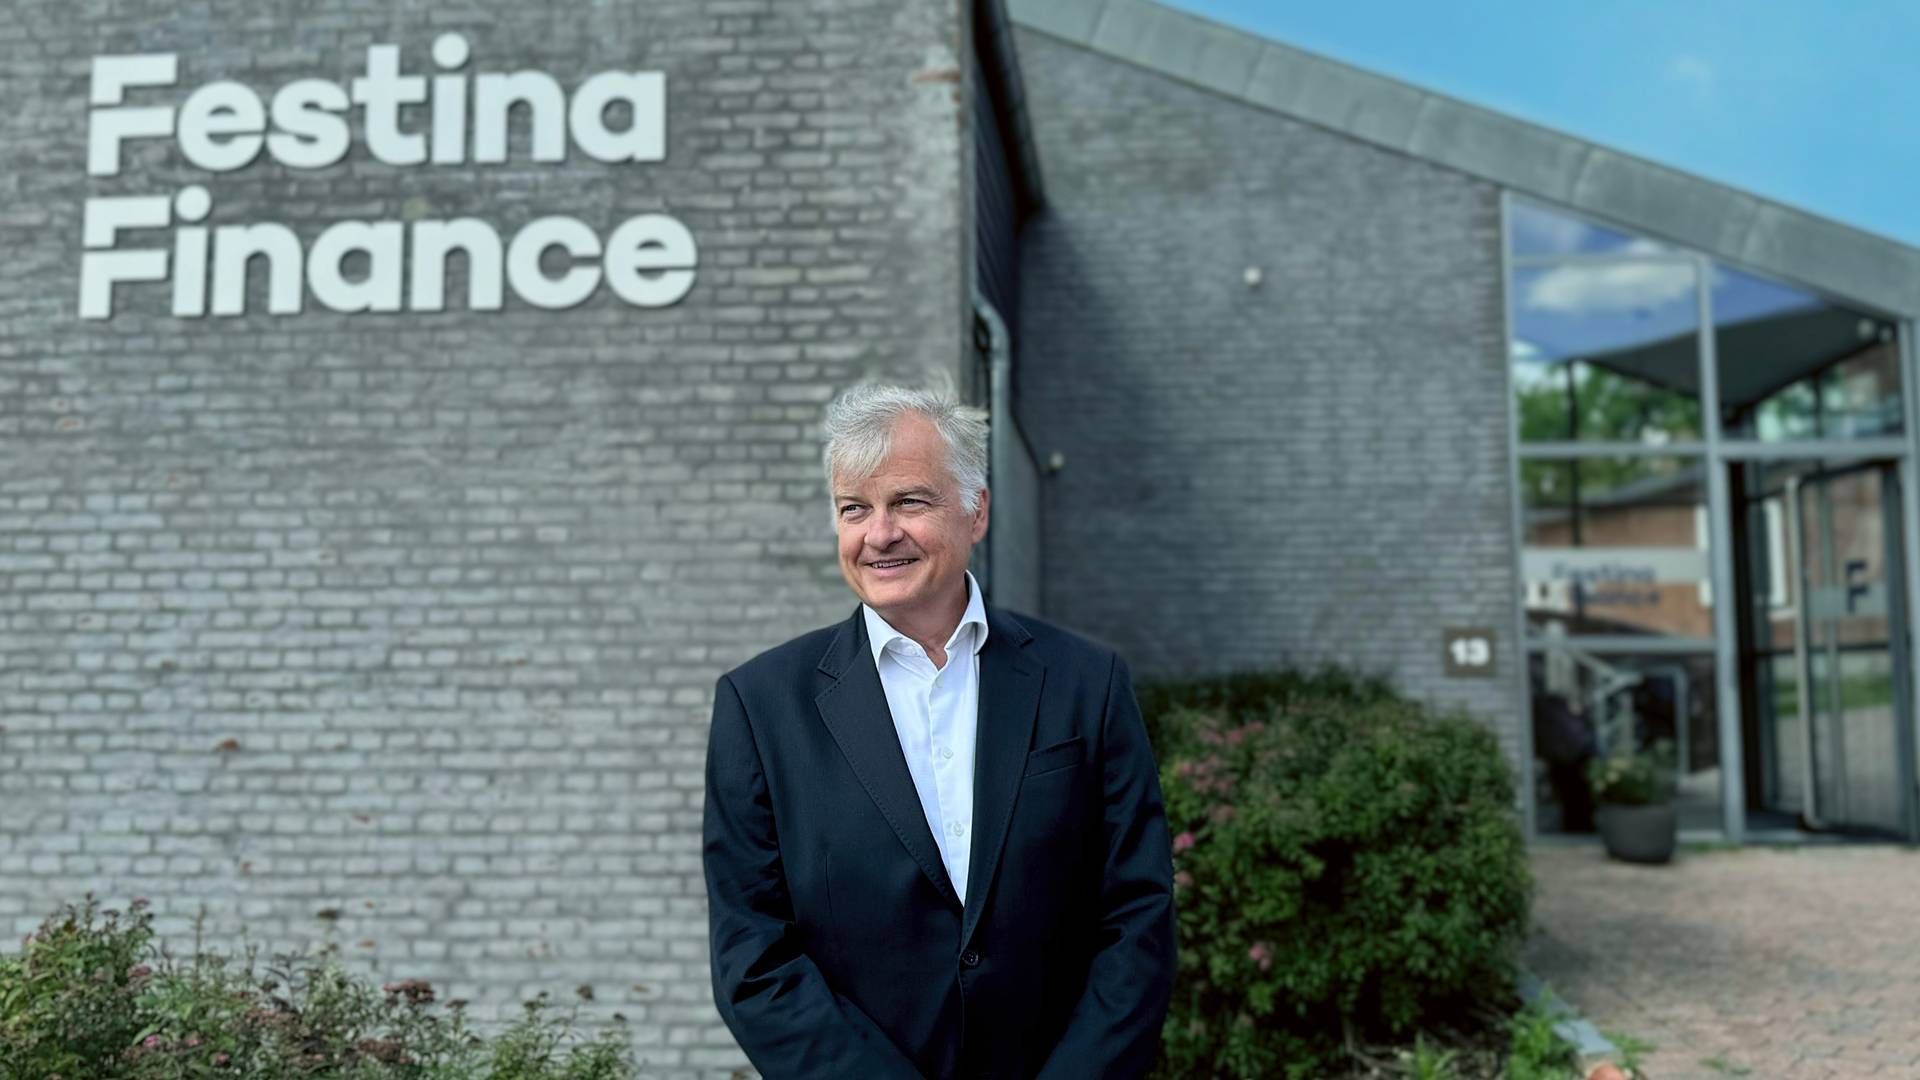 Adm. direktør i Festina Finance Mikael Braagaard fortæller, at udlandet er en vital del af selskabets fremtid. | Foto: PR-foto Festina Finance